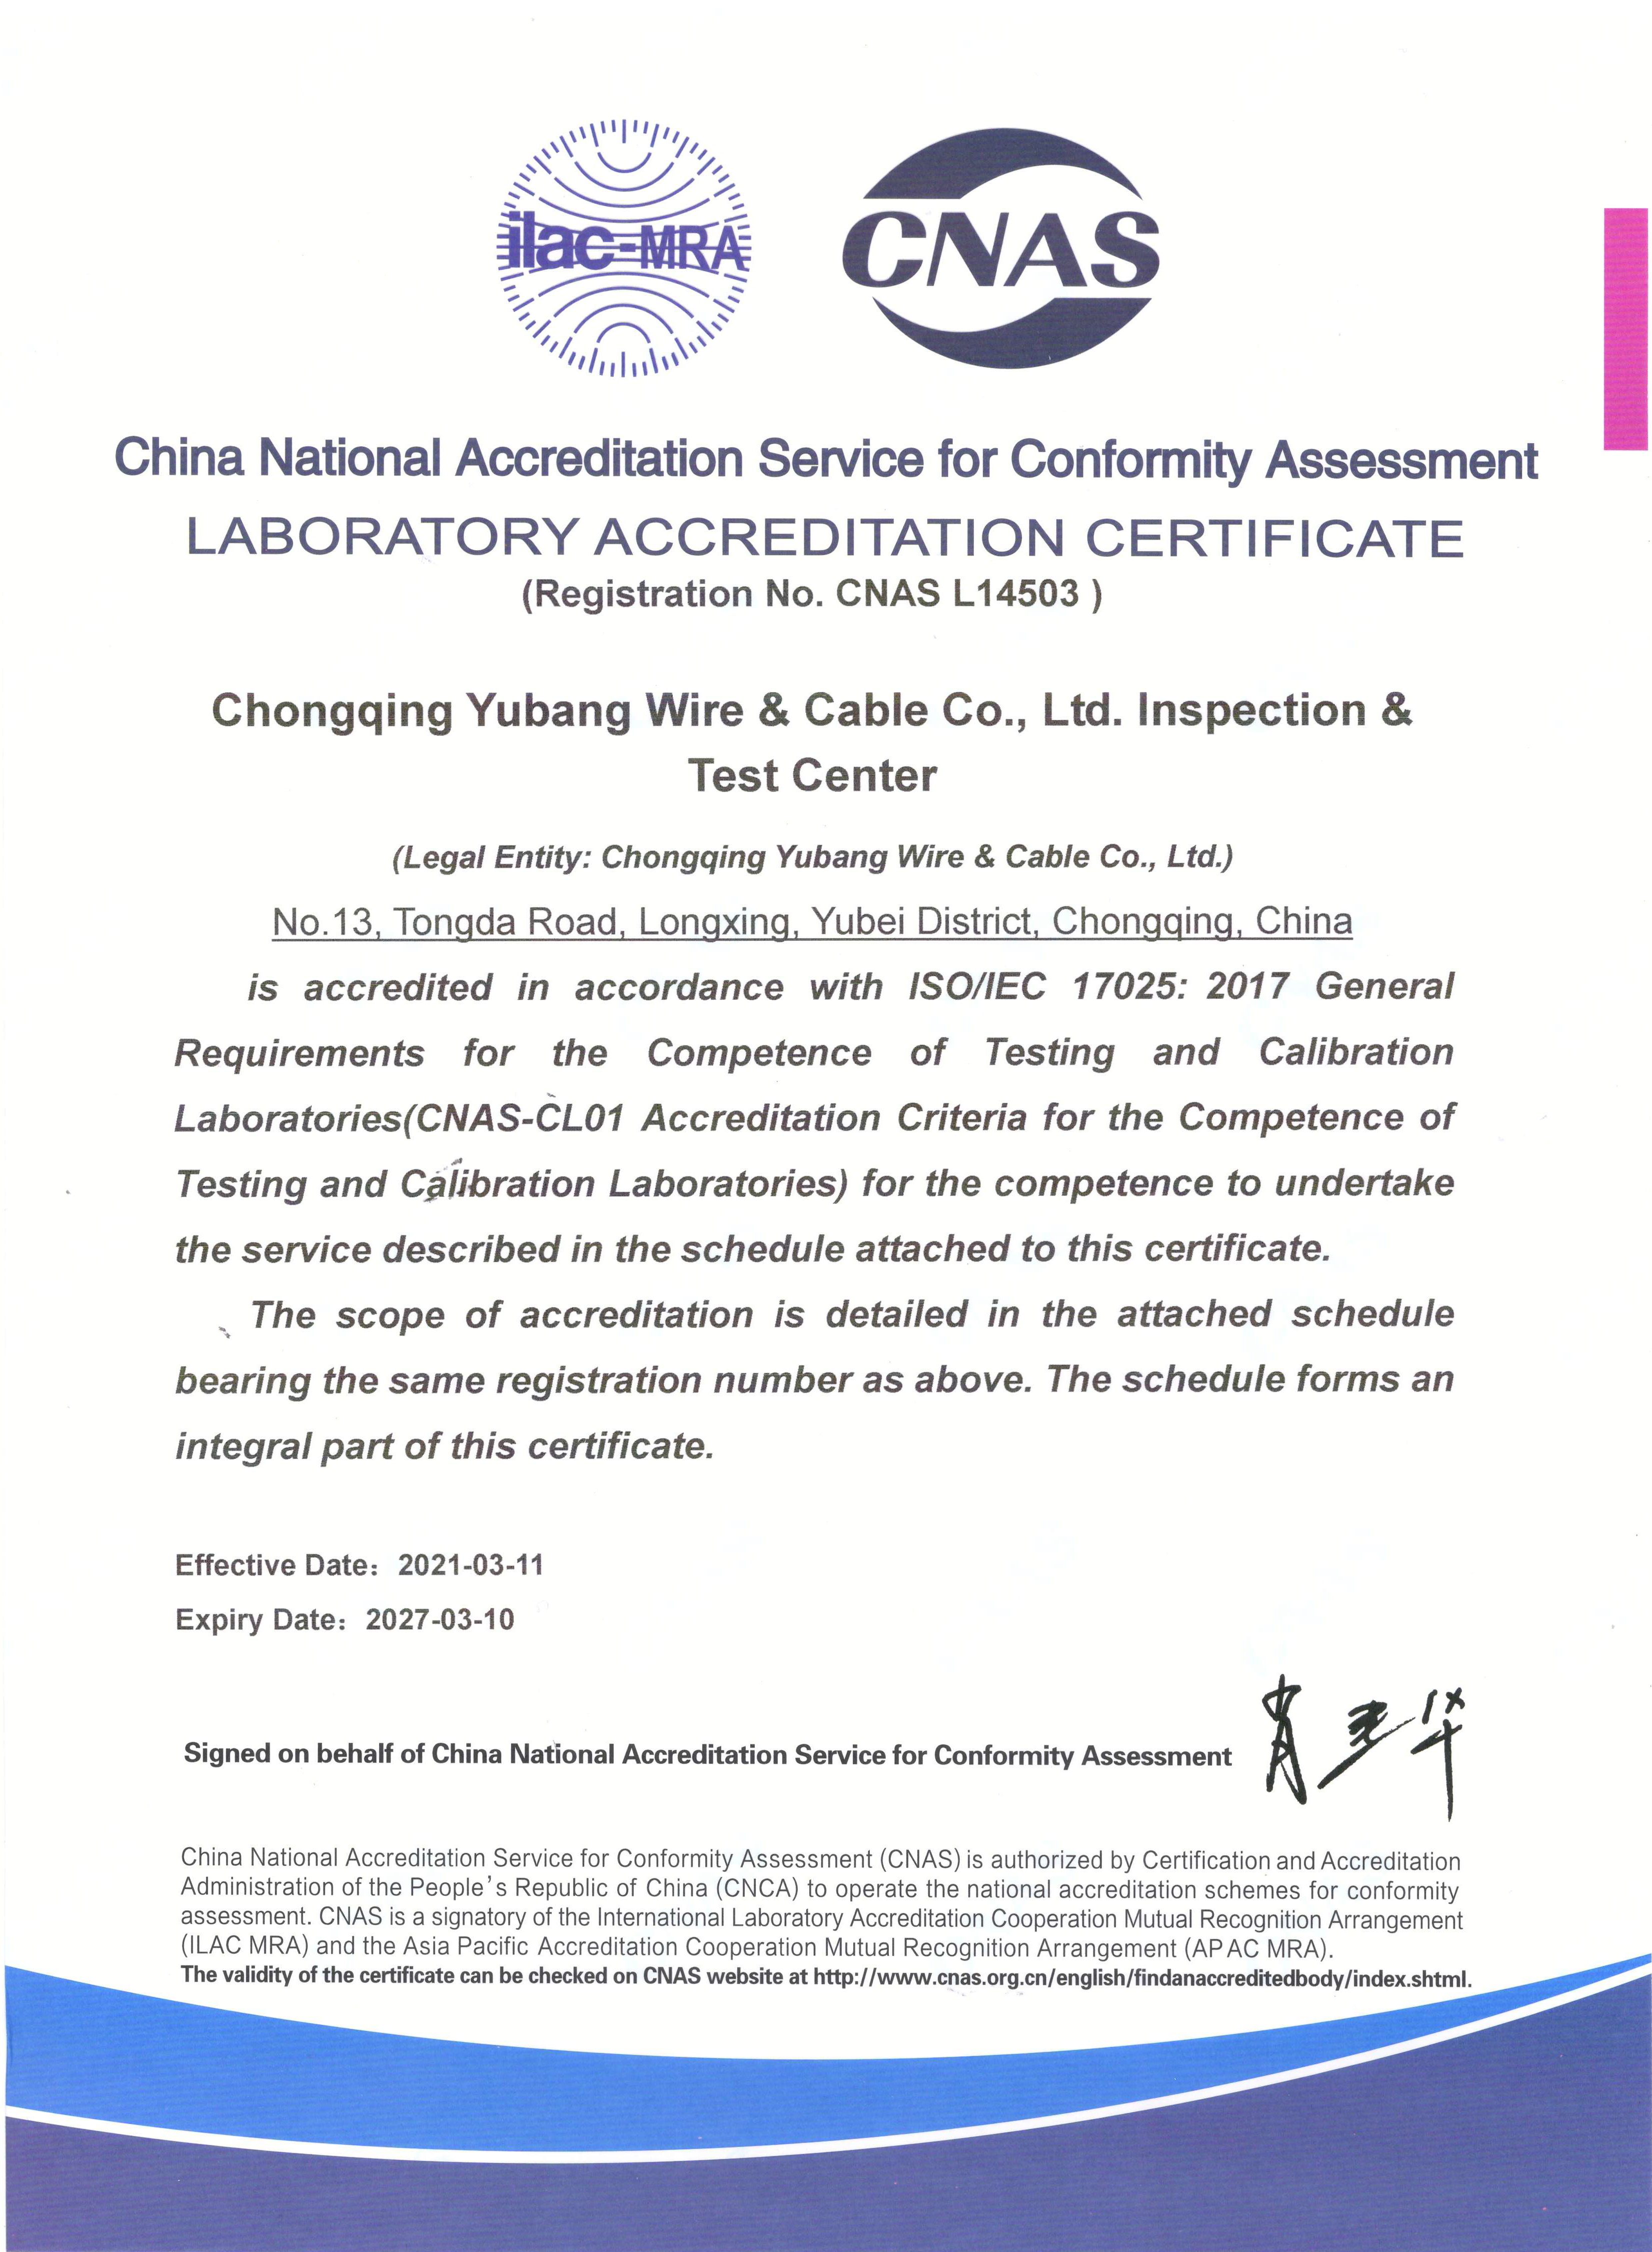 热烈祝贺重庆市宇邦线缆有限公司试验中心获得中国合格评定国家认可委员会CNAS实验室认可证书